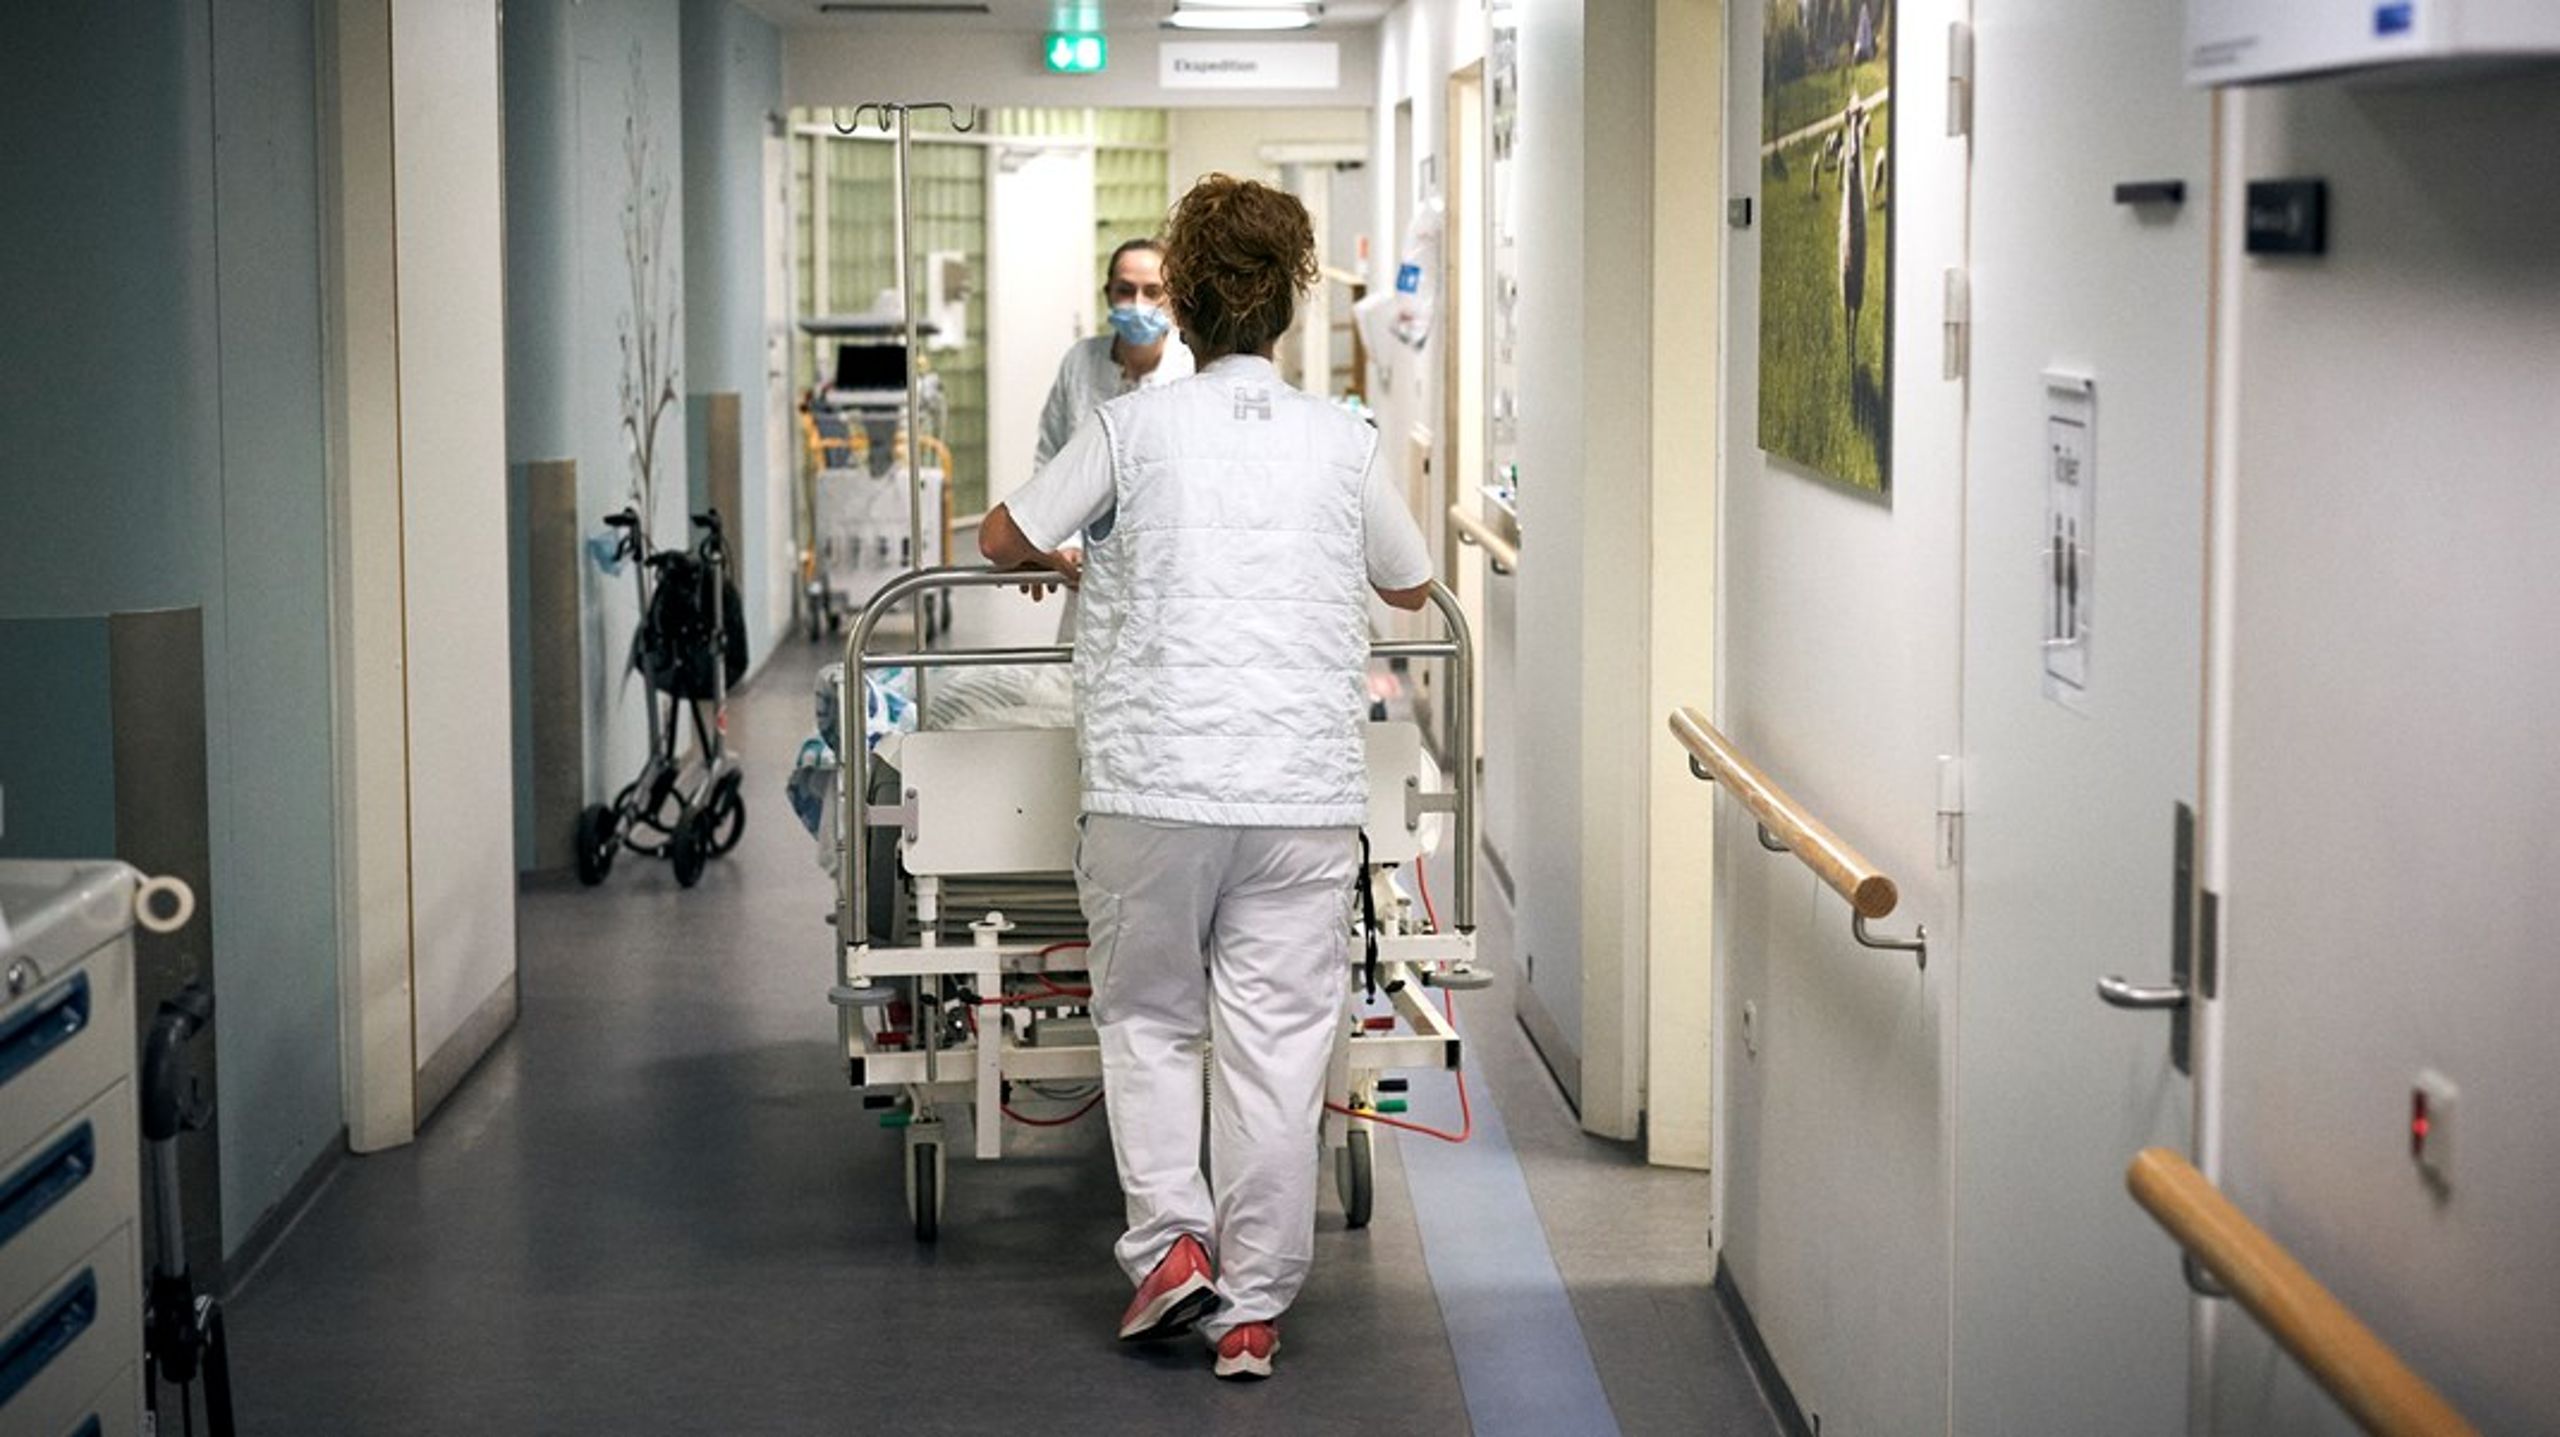 For sygeplejerskernes vedkommende er det hverken faget eller patienterne, der får mange til at søge væk. Det er lønnen og arbejdsvilkårene, skriver Grete Christensen.